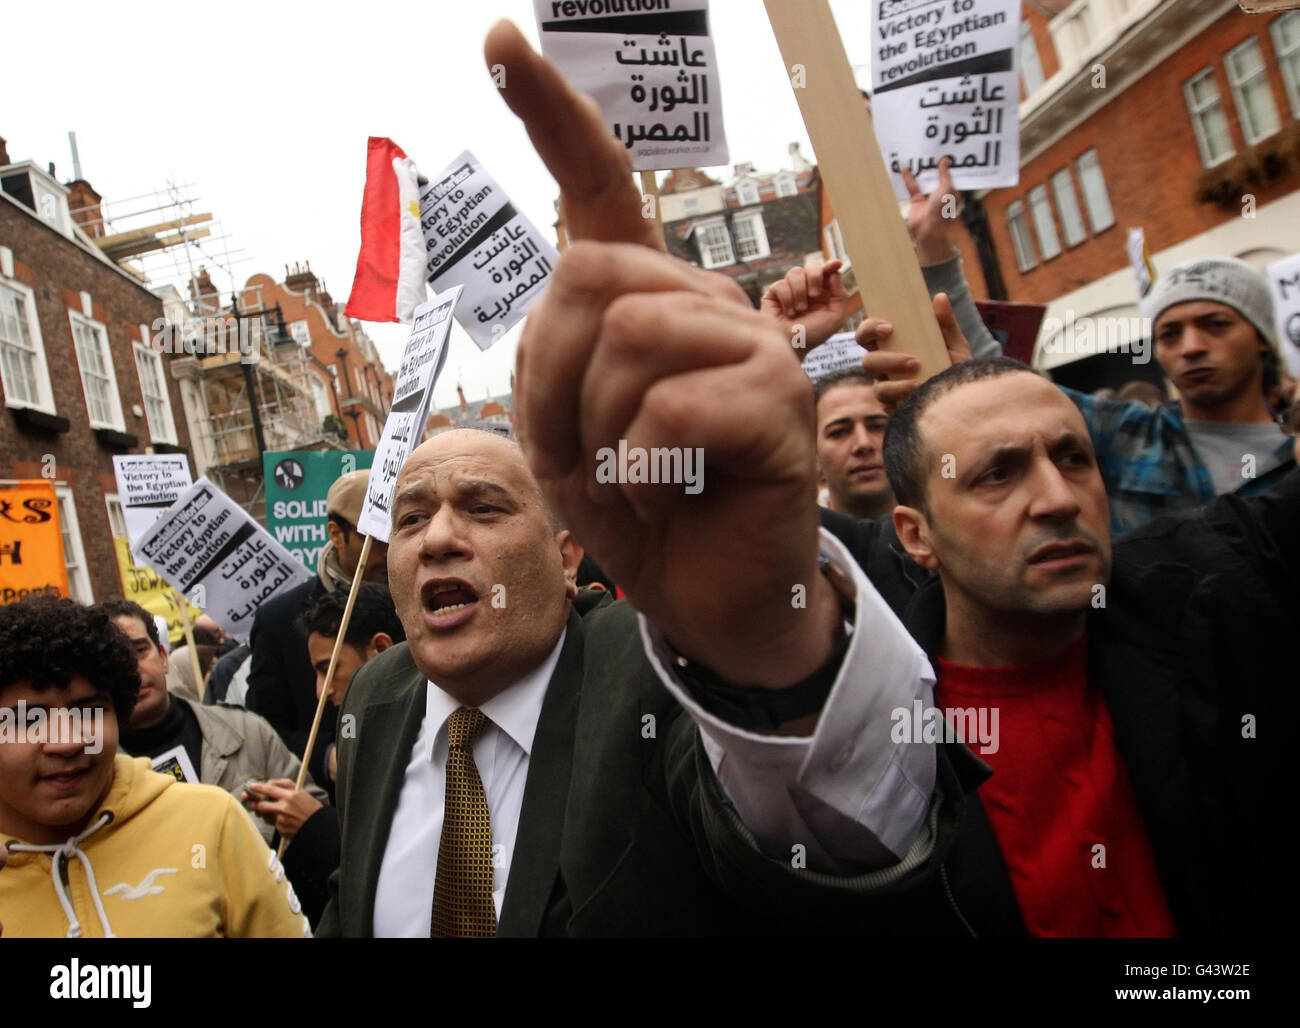 Les manifestants prennent part à une manifestation contre le président égyptien Hosni Moubarak devant l'ambassade égyptienne, dans le centre de Londres. Banque D'Images